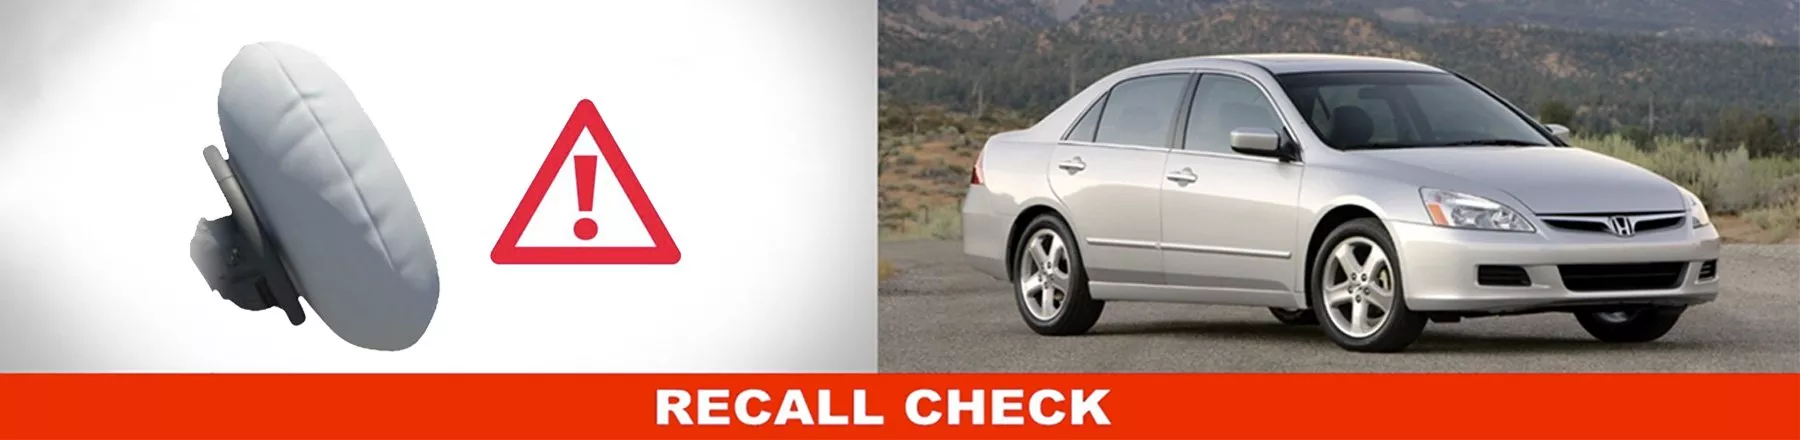 Airbag recall check at Sterling Honda